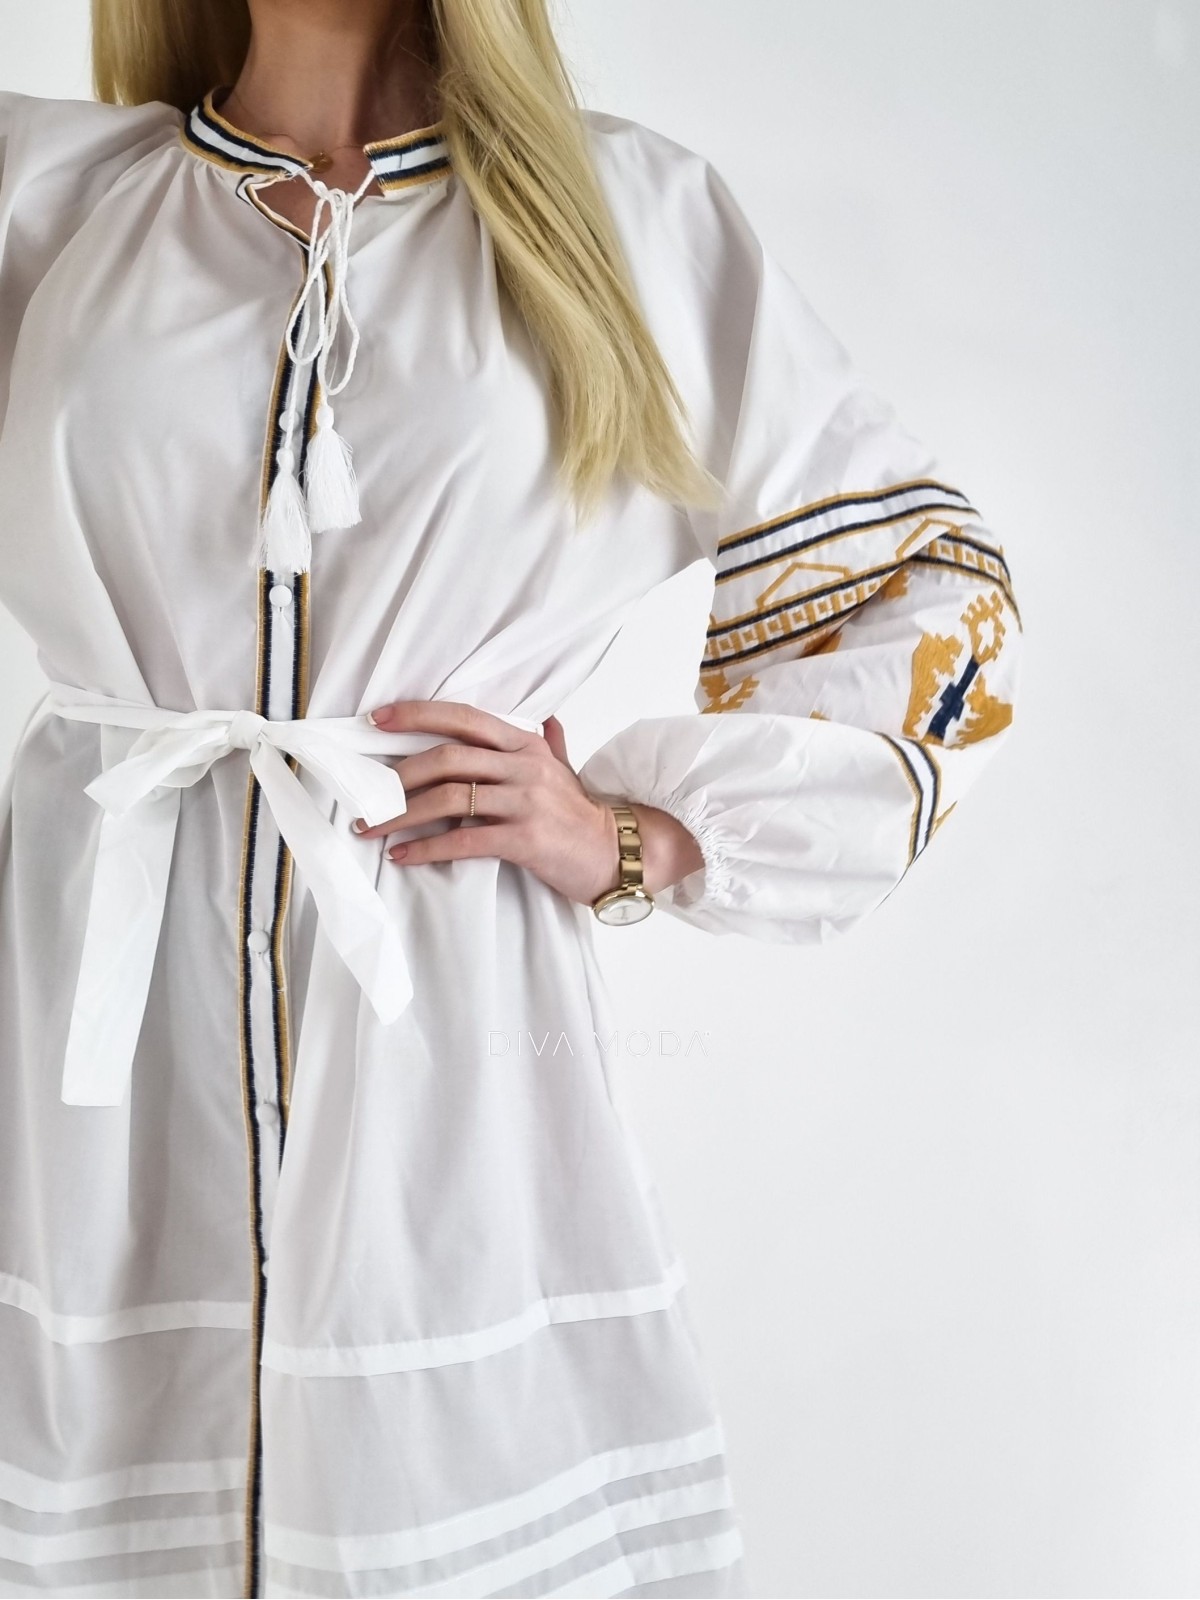 Šaty s puf rukávem Etno bílé A 123